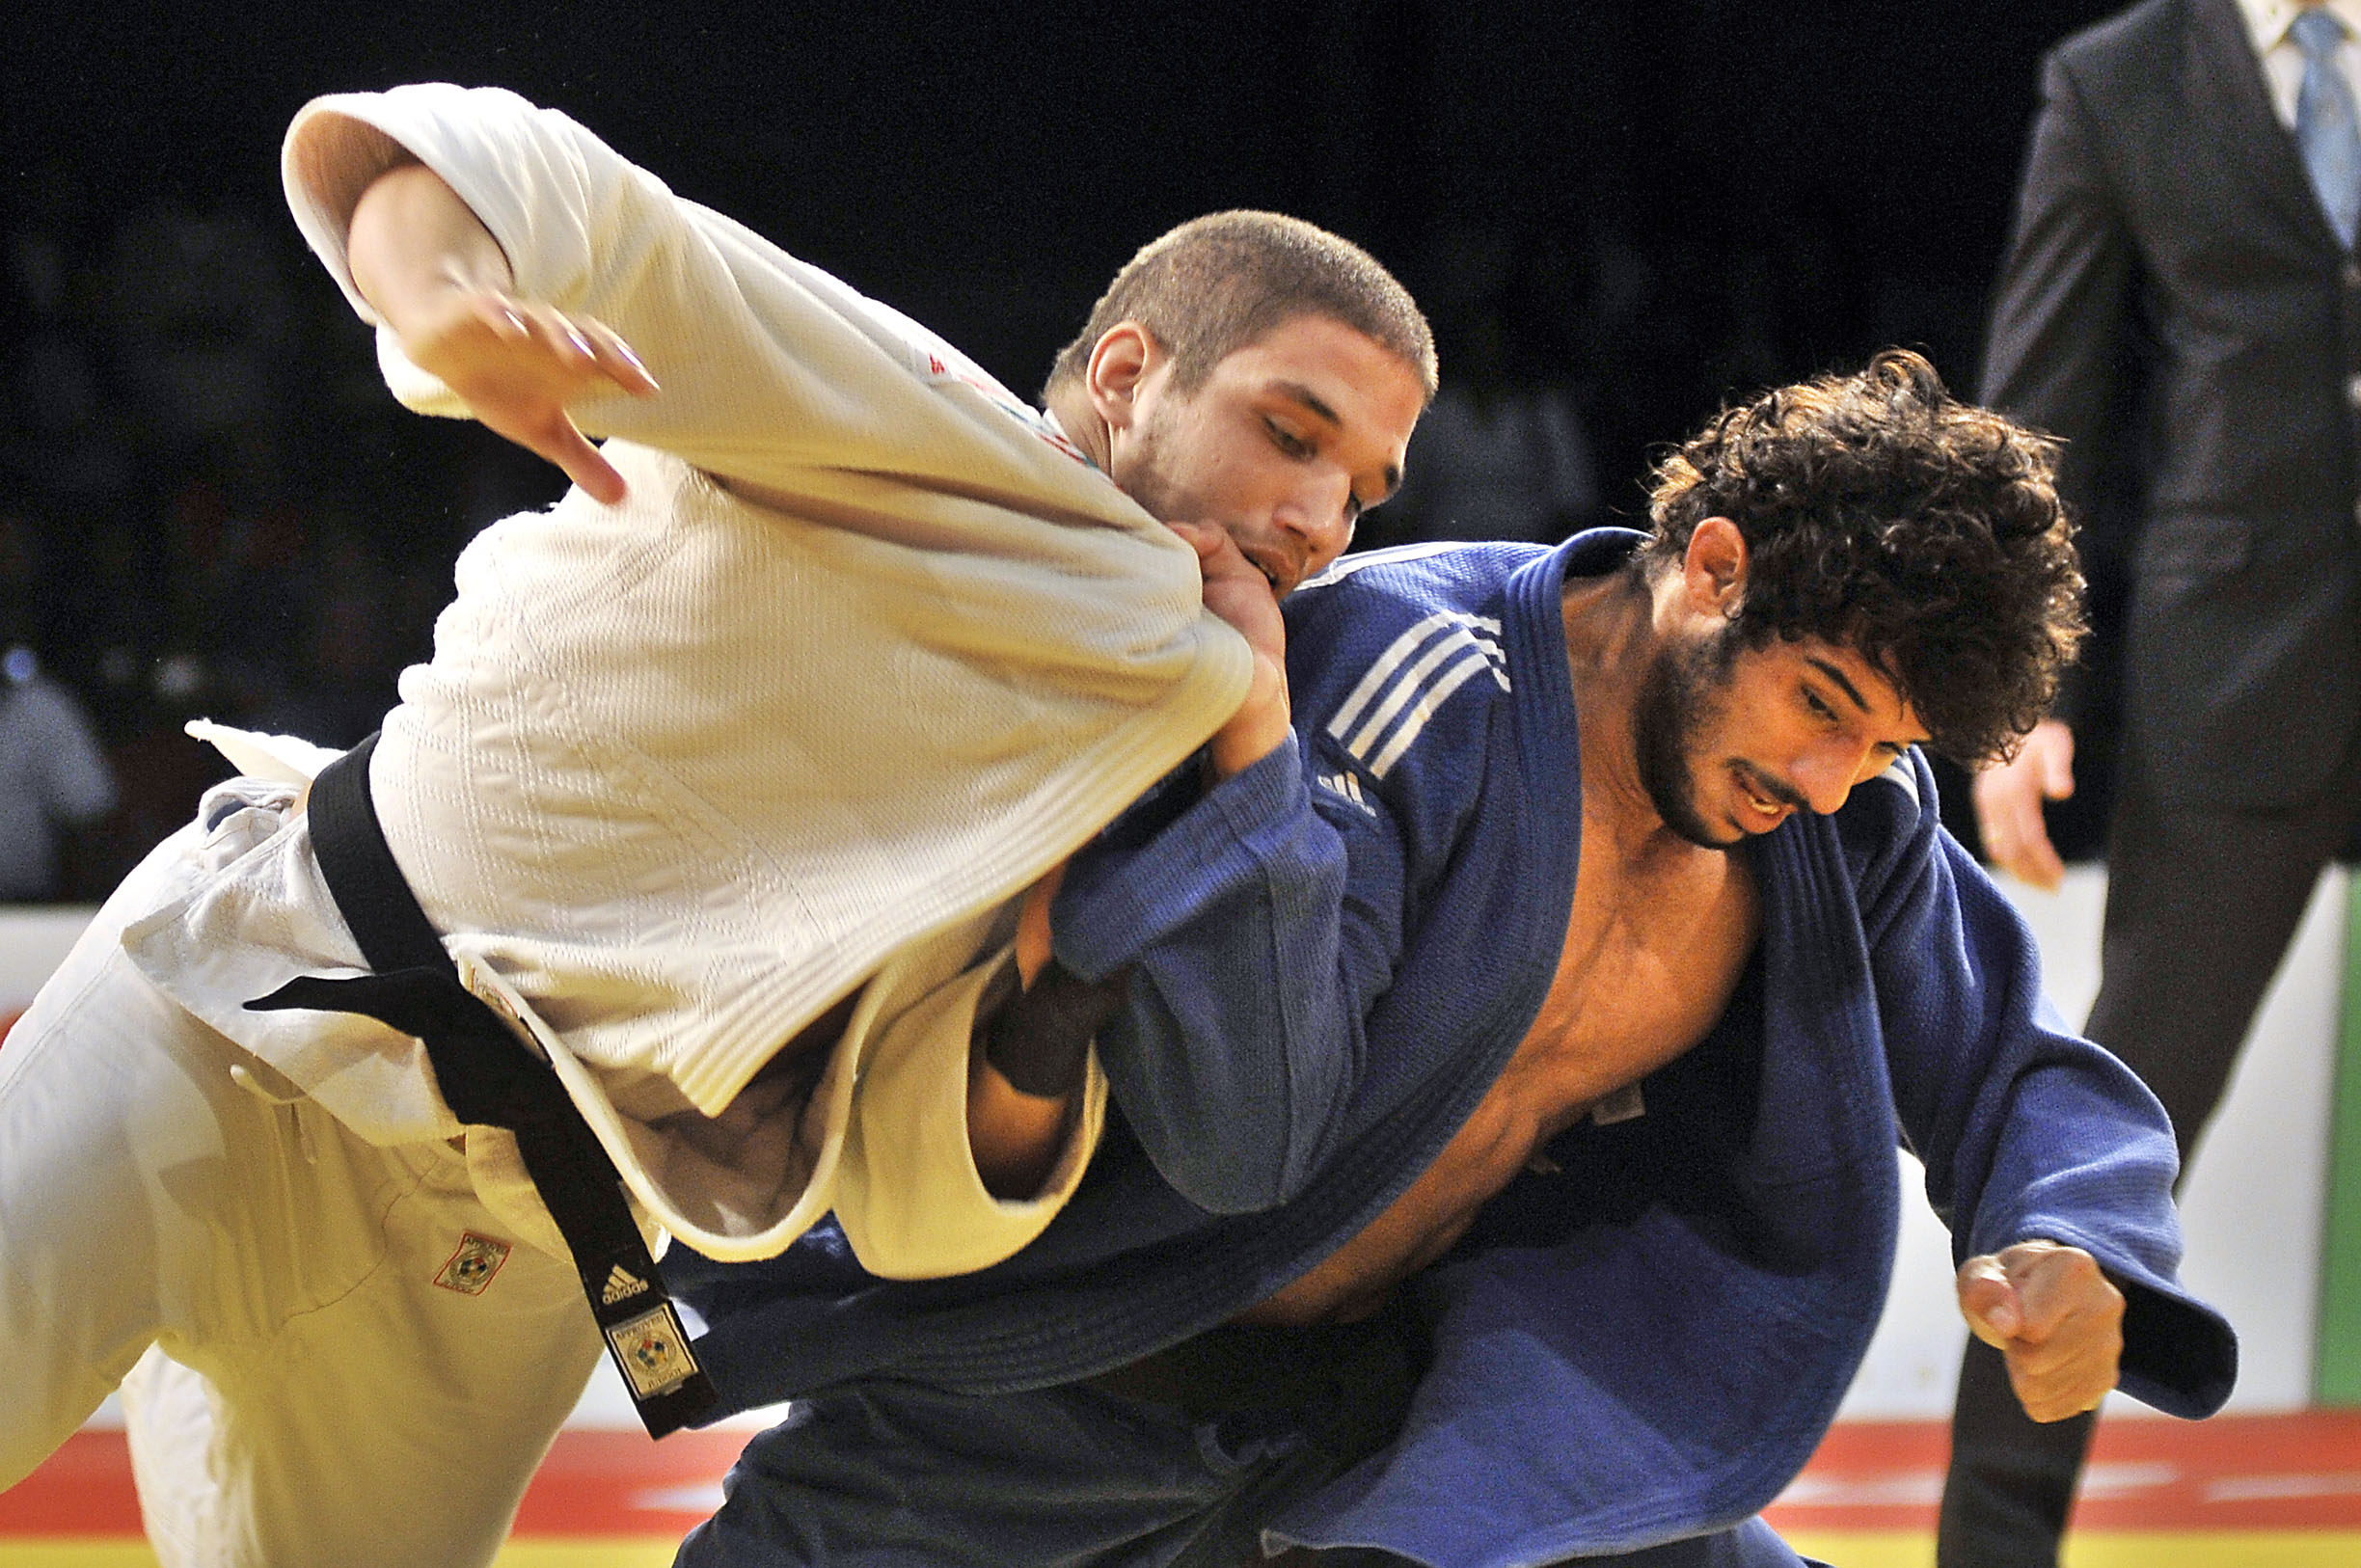 Asley González, uno de los campeones en el Grand Prix de Judo. Foto: José R. Rodríguez Robleda